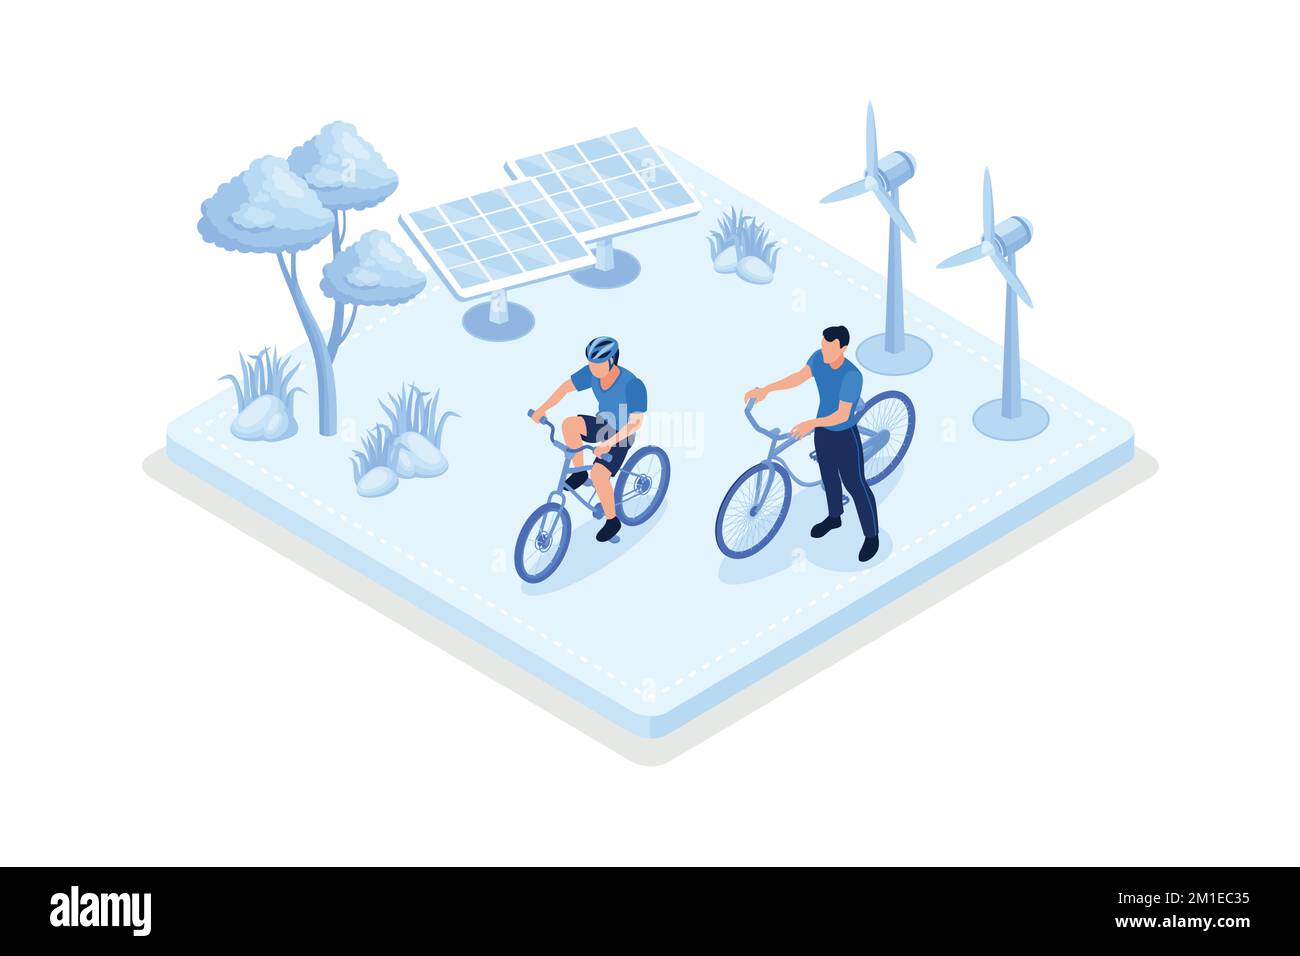 Sustainable transportation, e-bike in modern city, isometric vector modern illustration Stock Vector